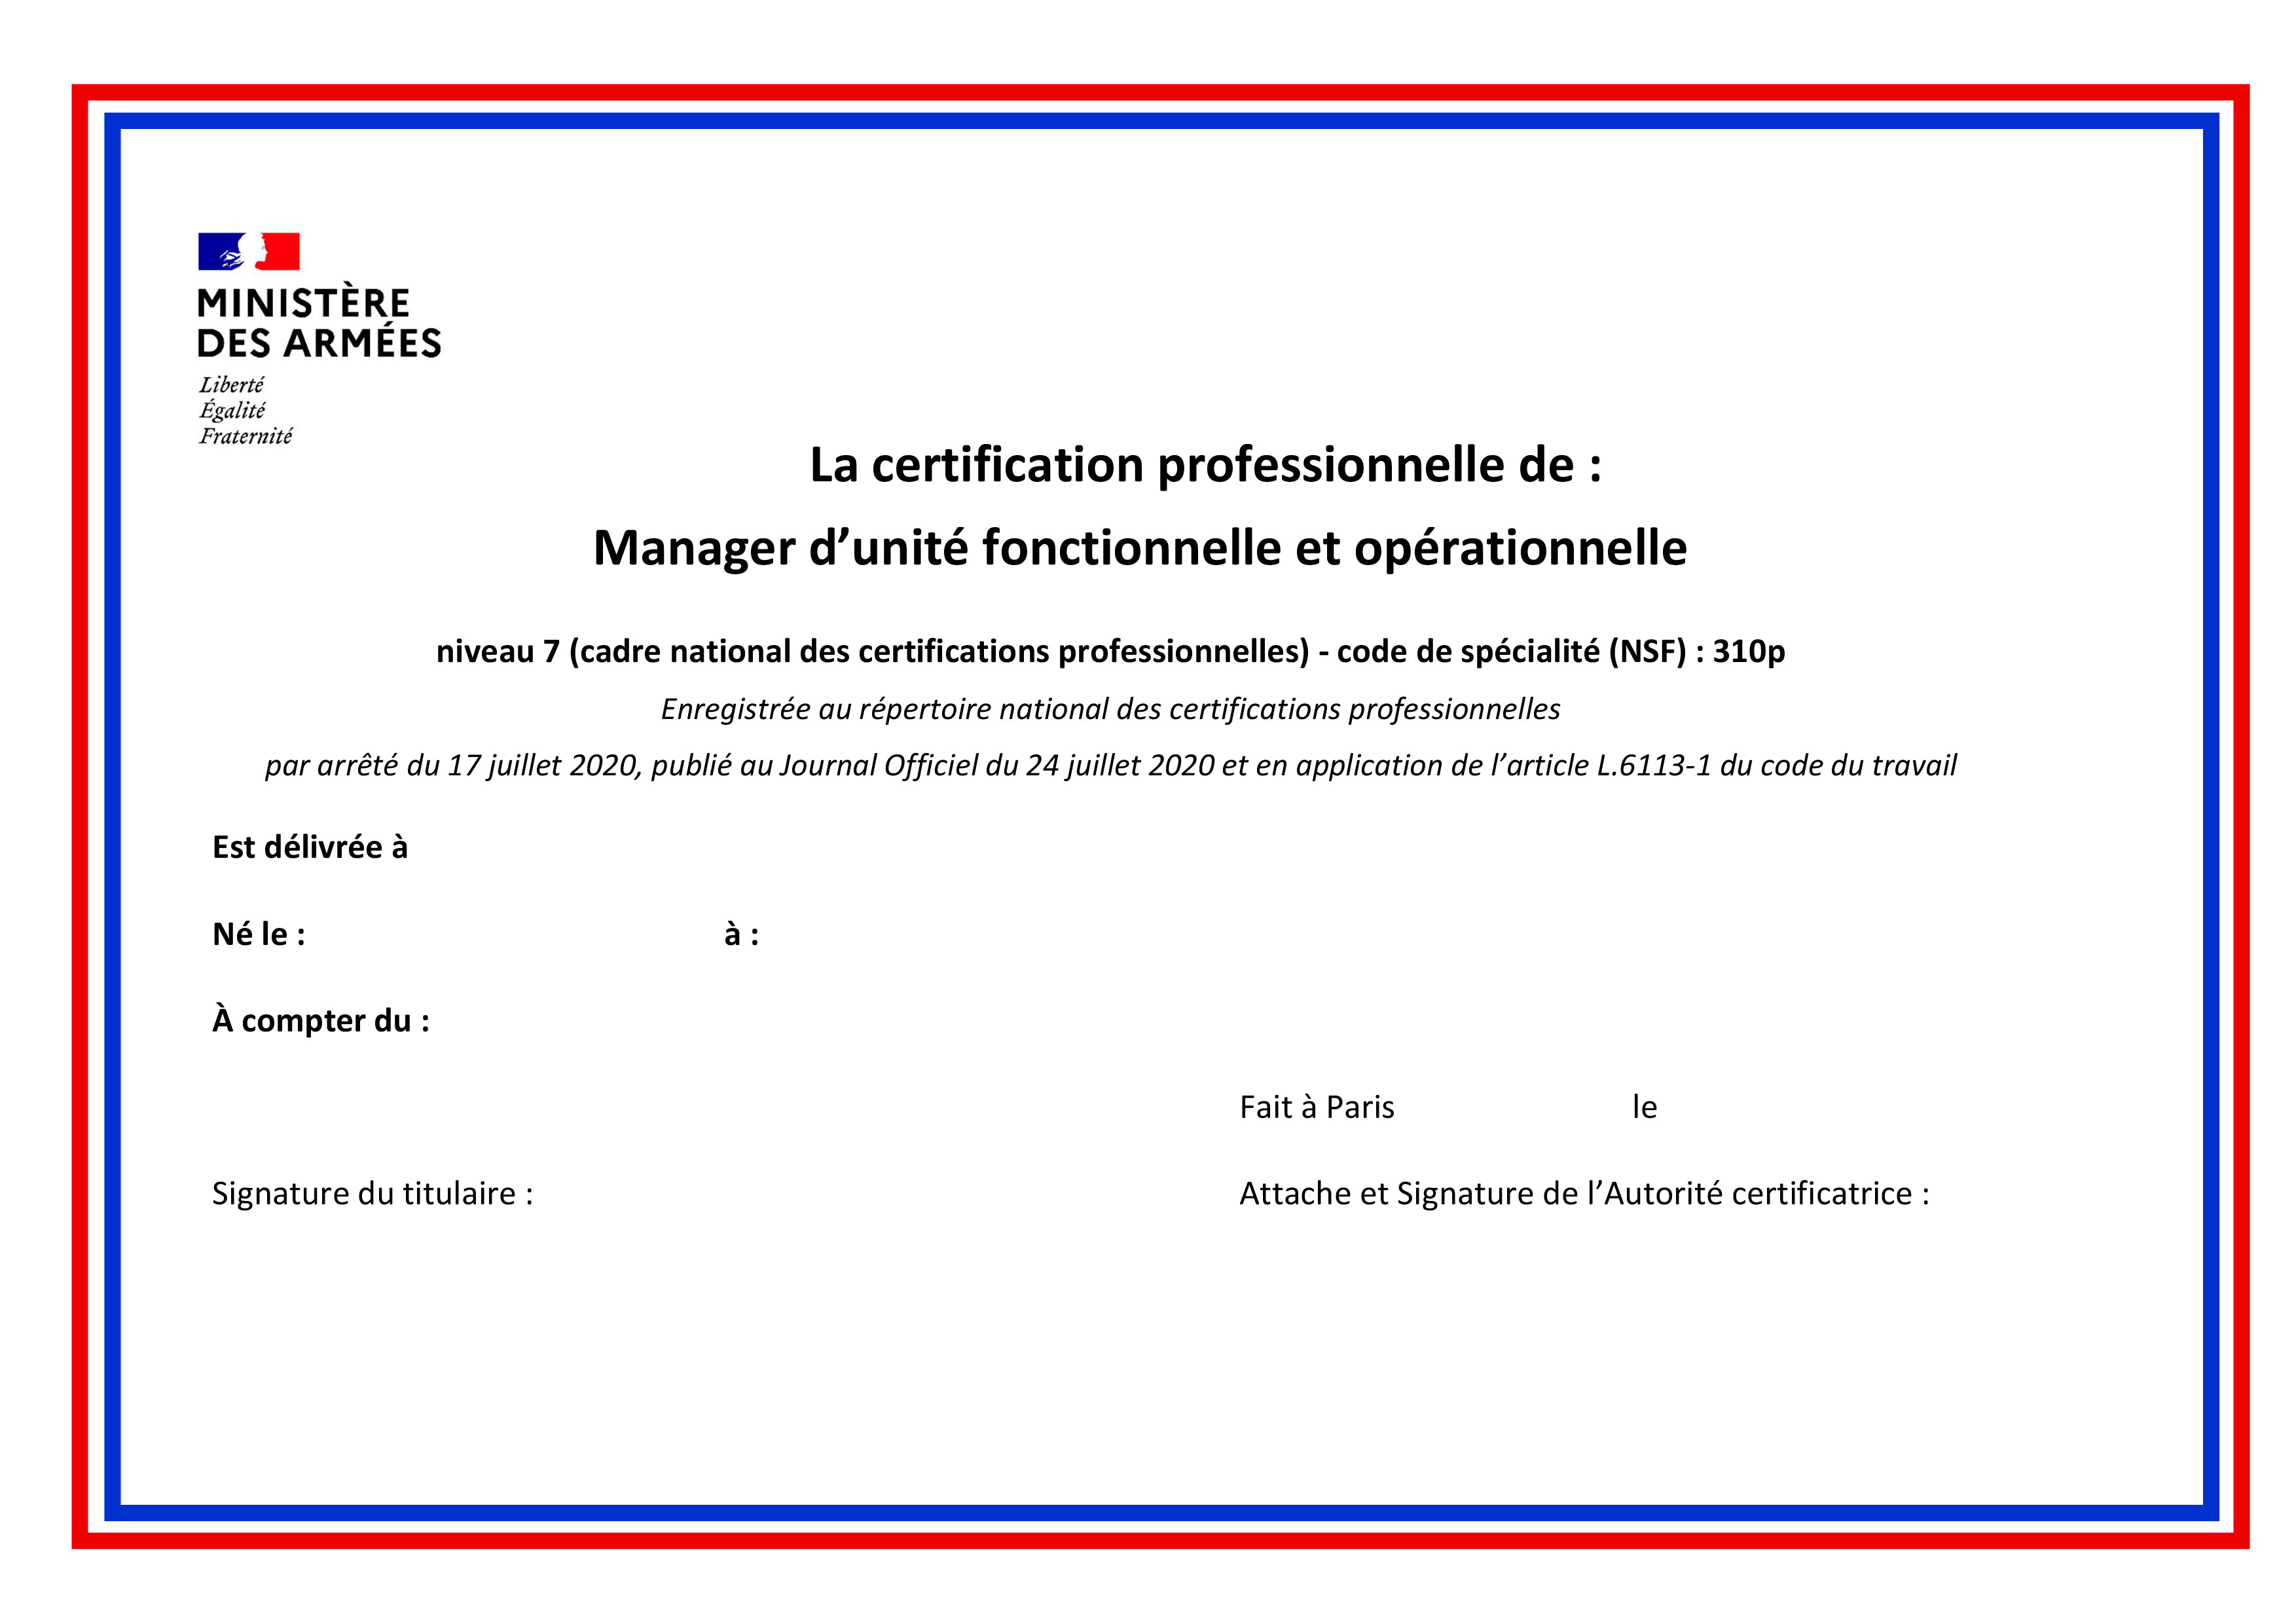 20220106 NP CDEC DEMS T Certification professionnelle art